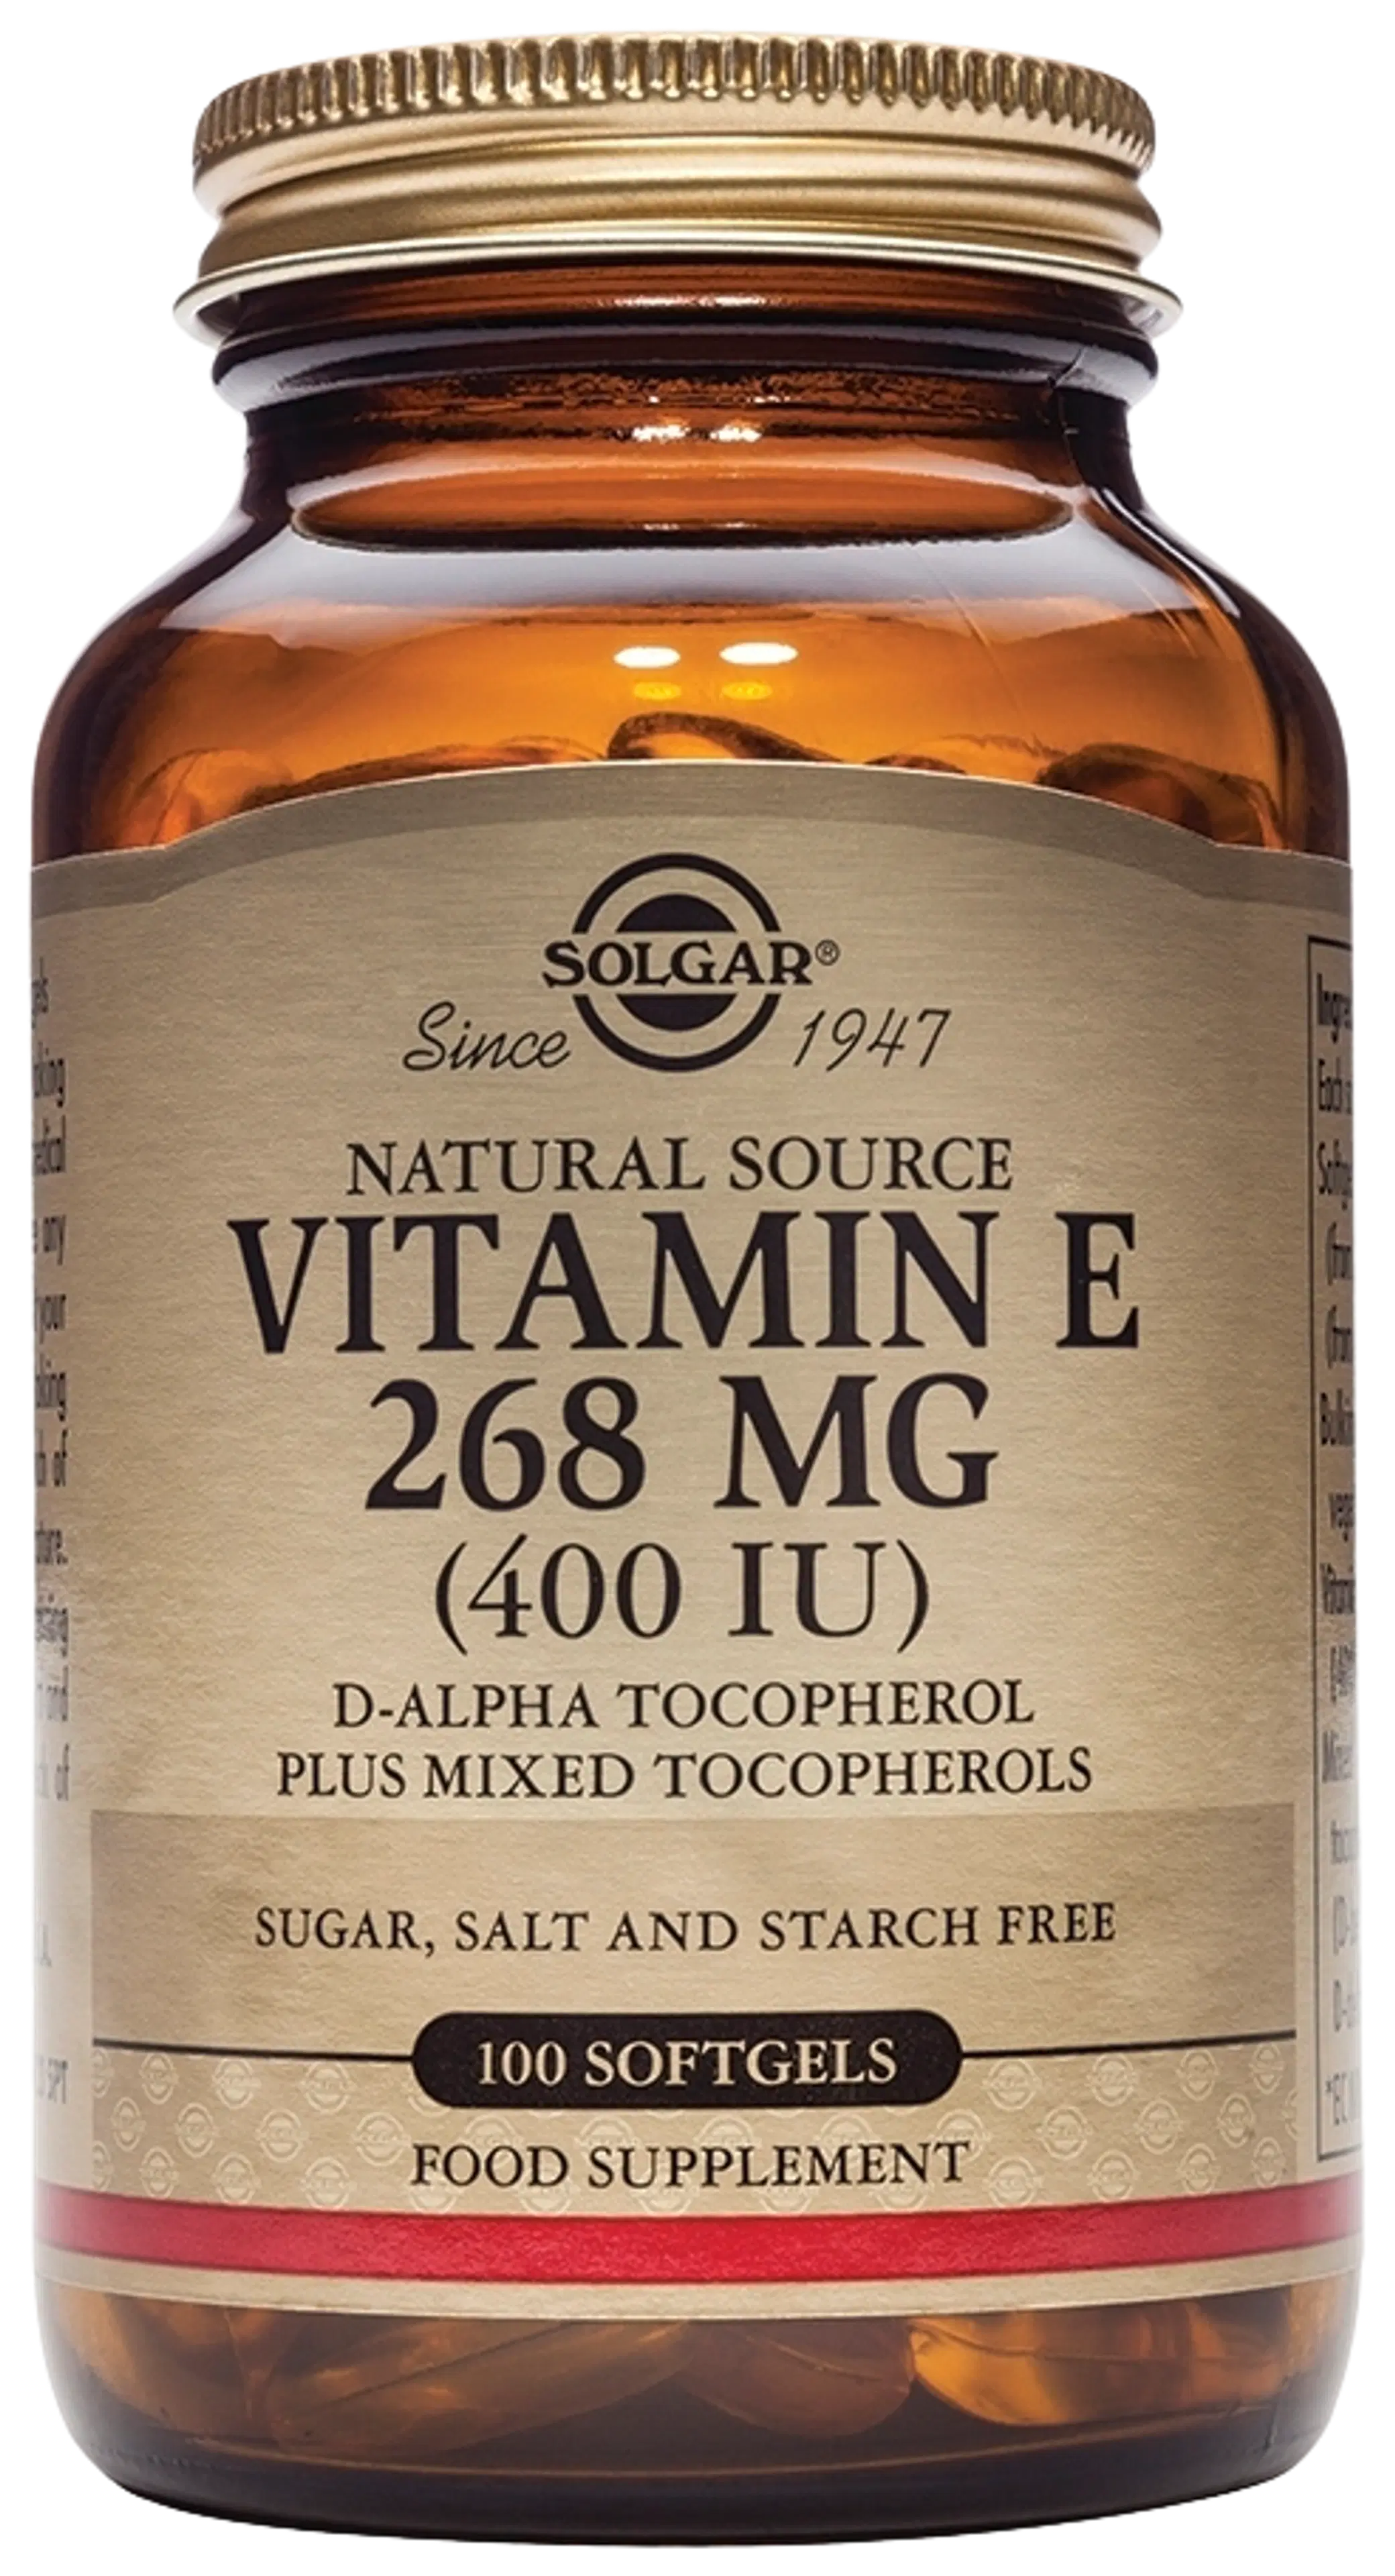 Solgar E-vitamiini 268 mg ravintolisä 100 kaps.